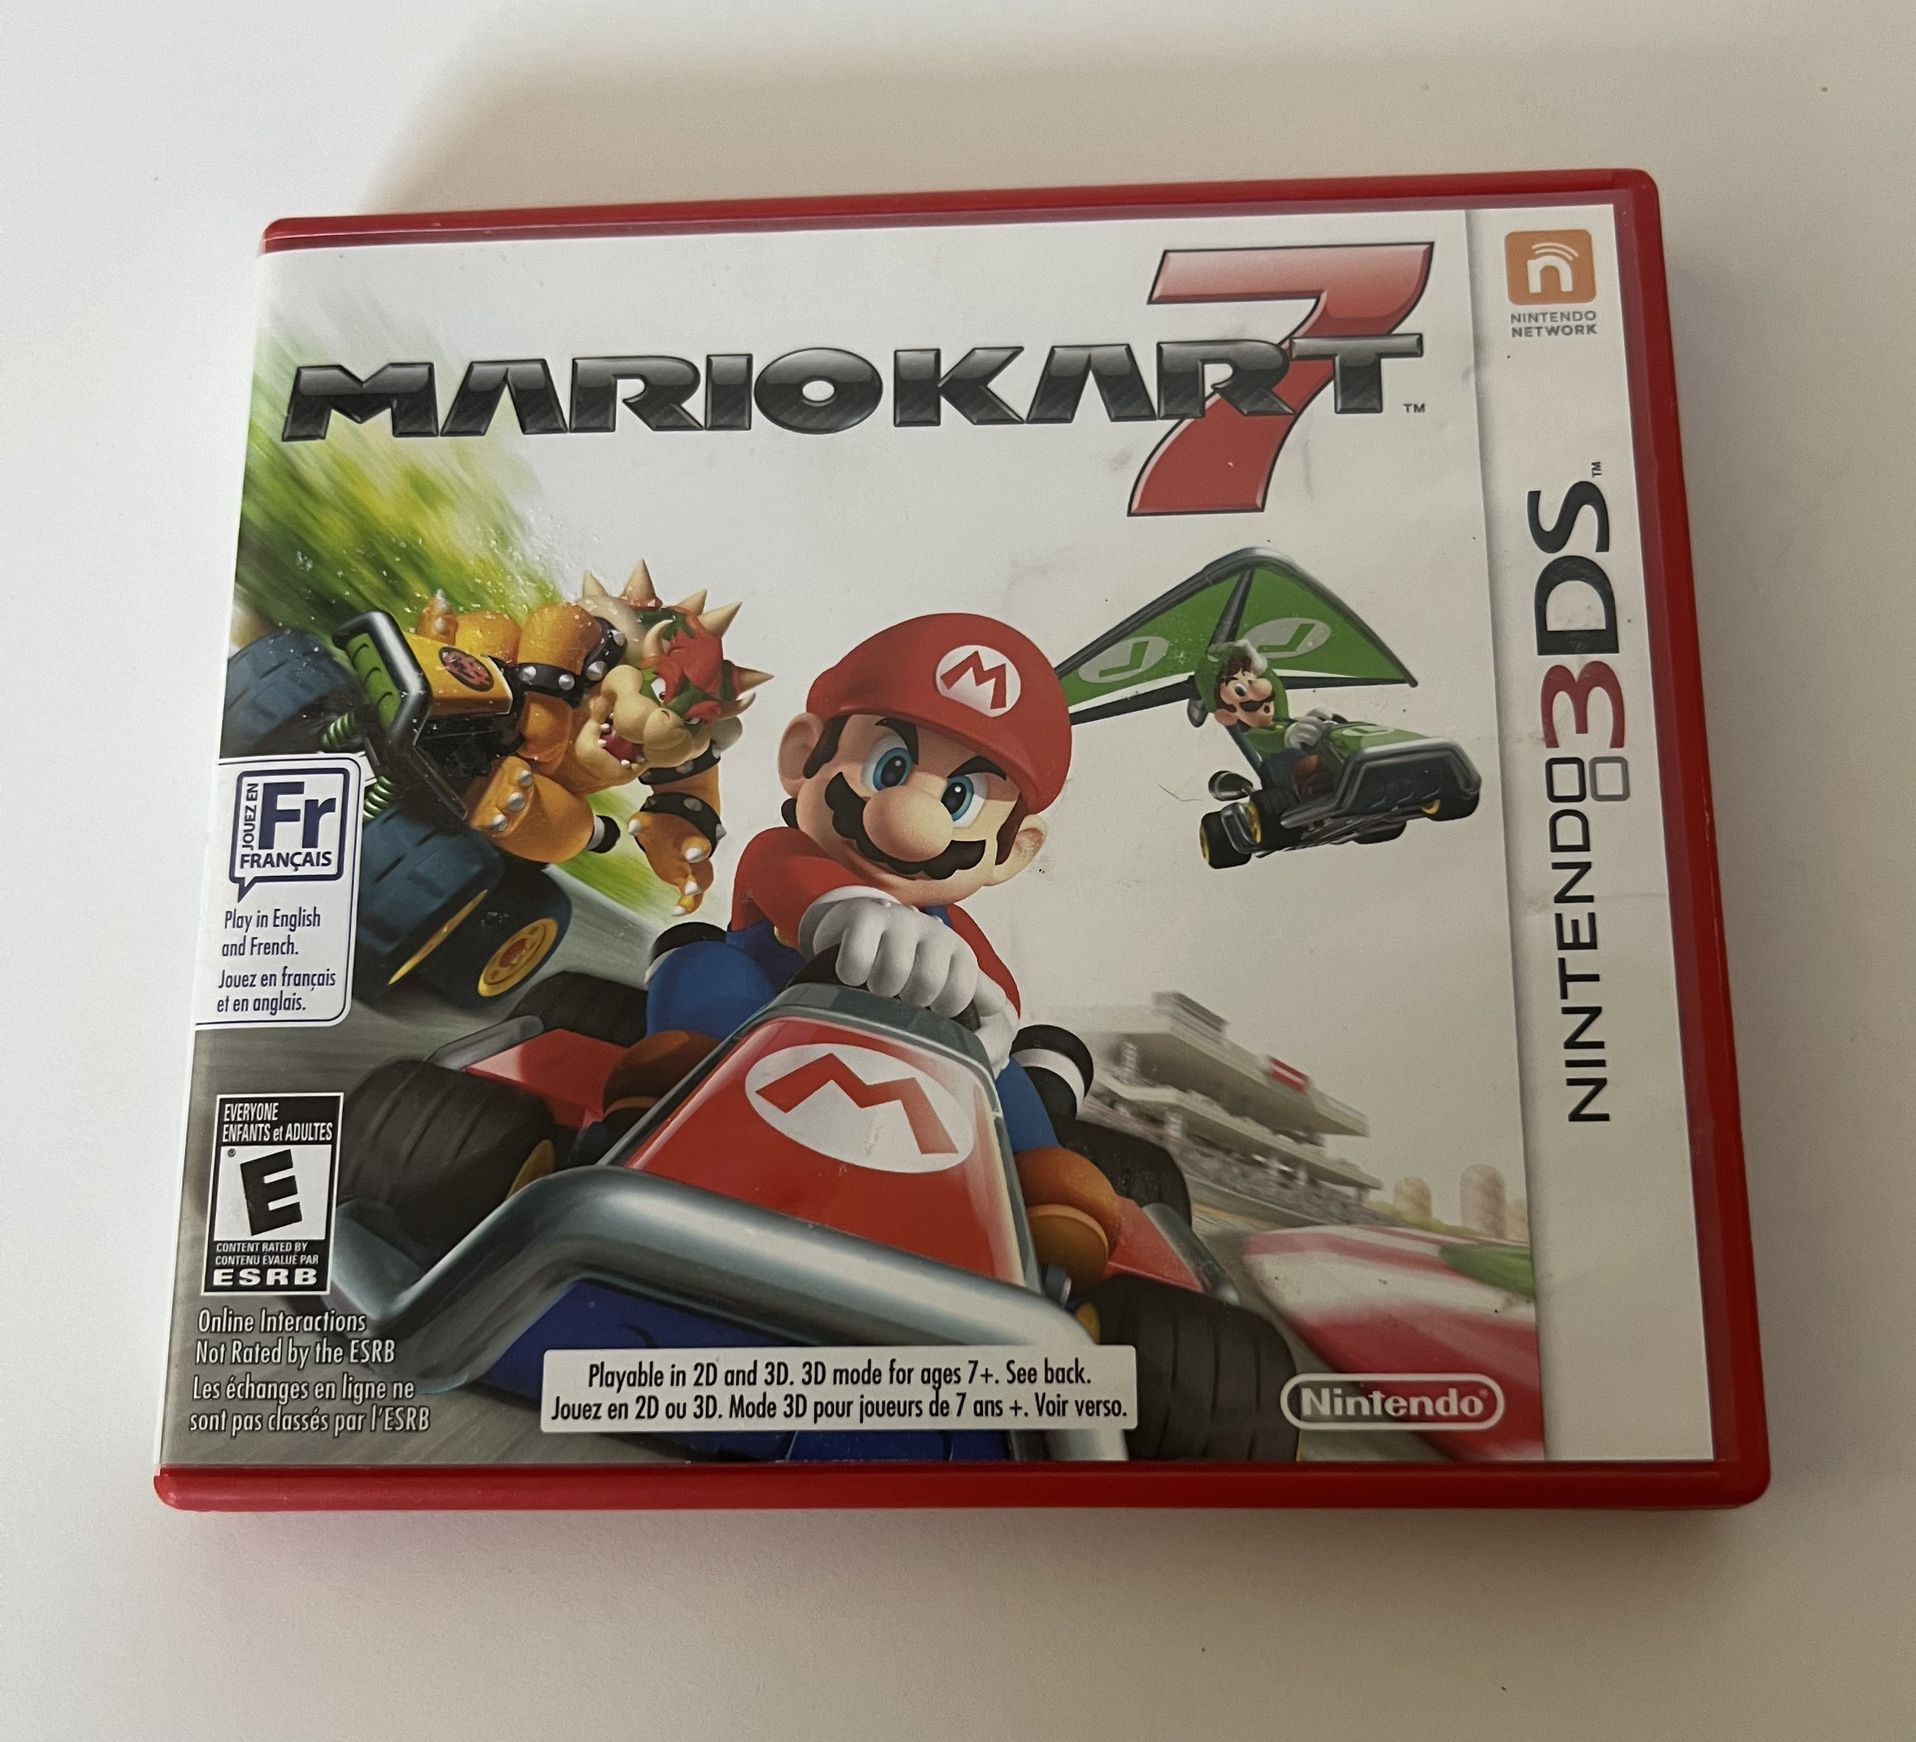 Mario Kart 7 Nintendo 3DS Video Game Manual Case Authentic Original Games